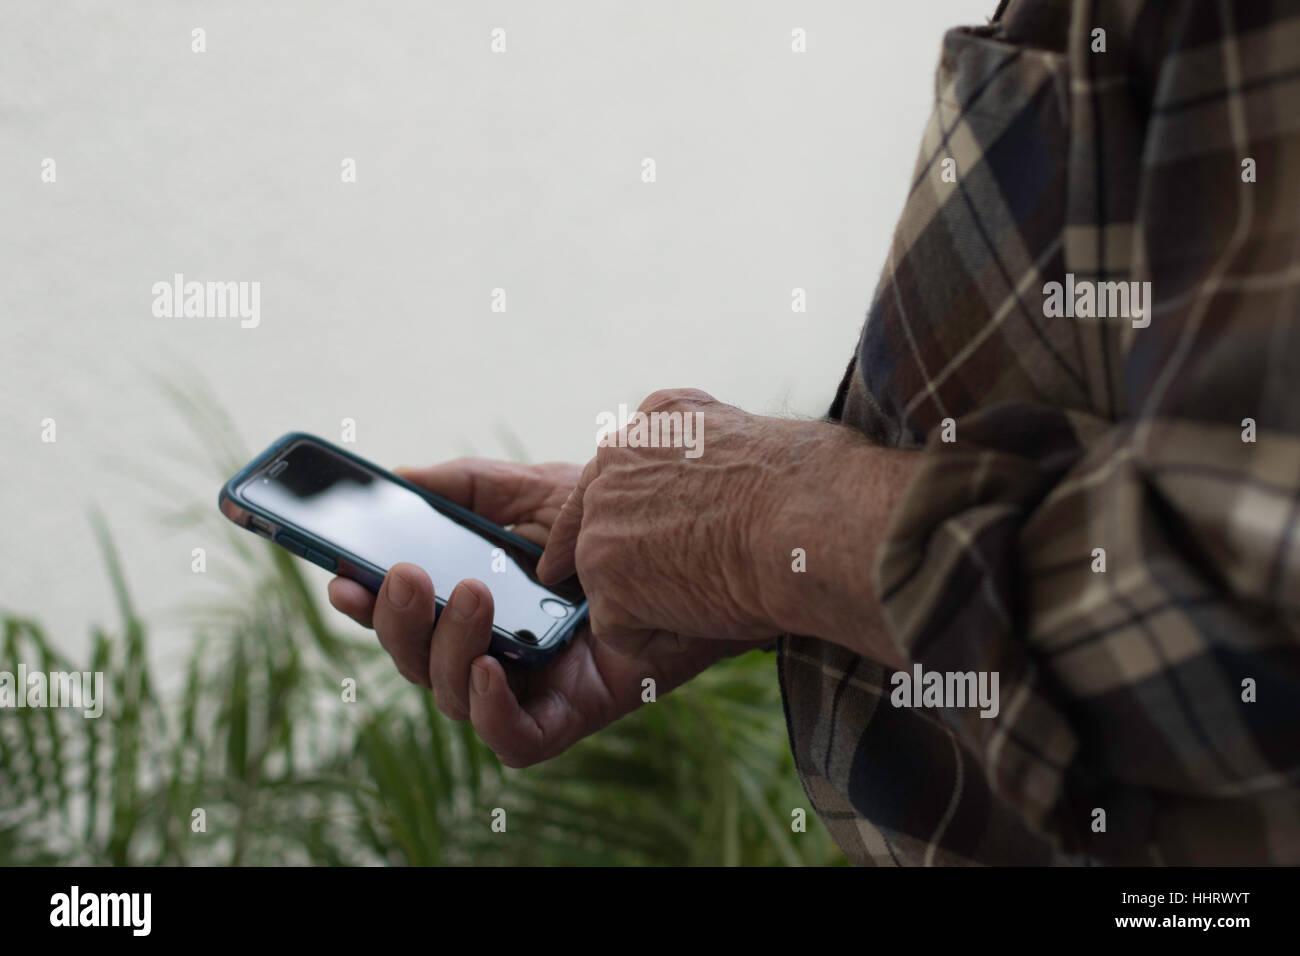 Man's hand holding cell phone dans la main droite à l'extérieur sur les végétaux verts avec l'espace négatif en haut à gauche de l'arrière-plan bouton Accueil Banque D'Images